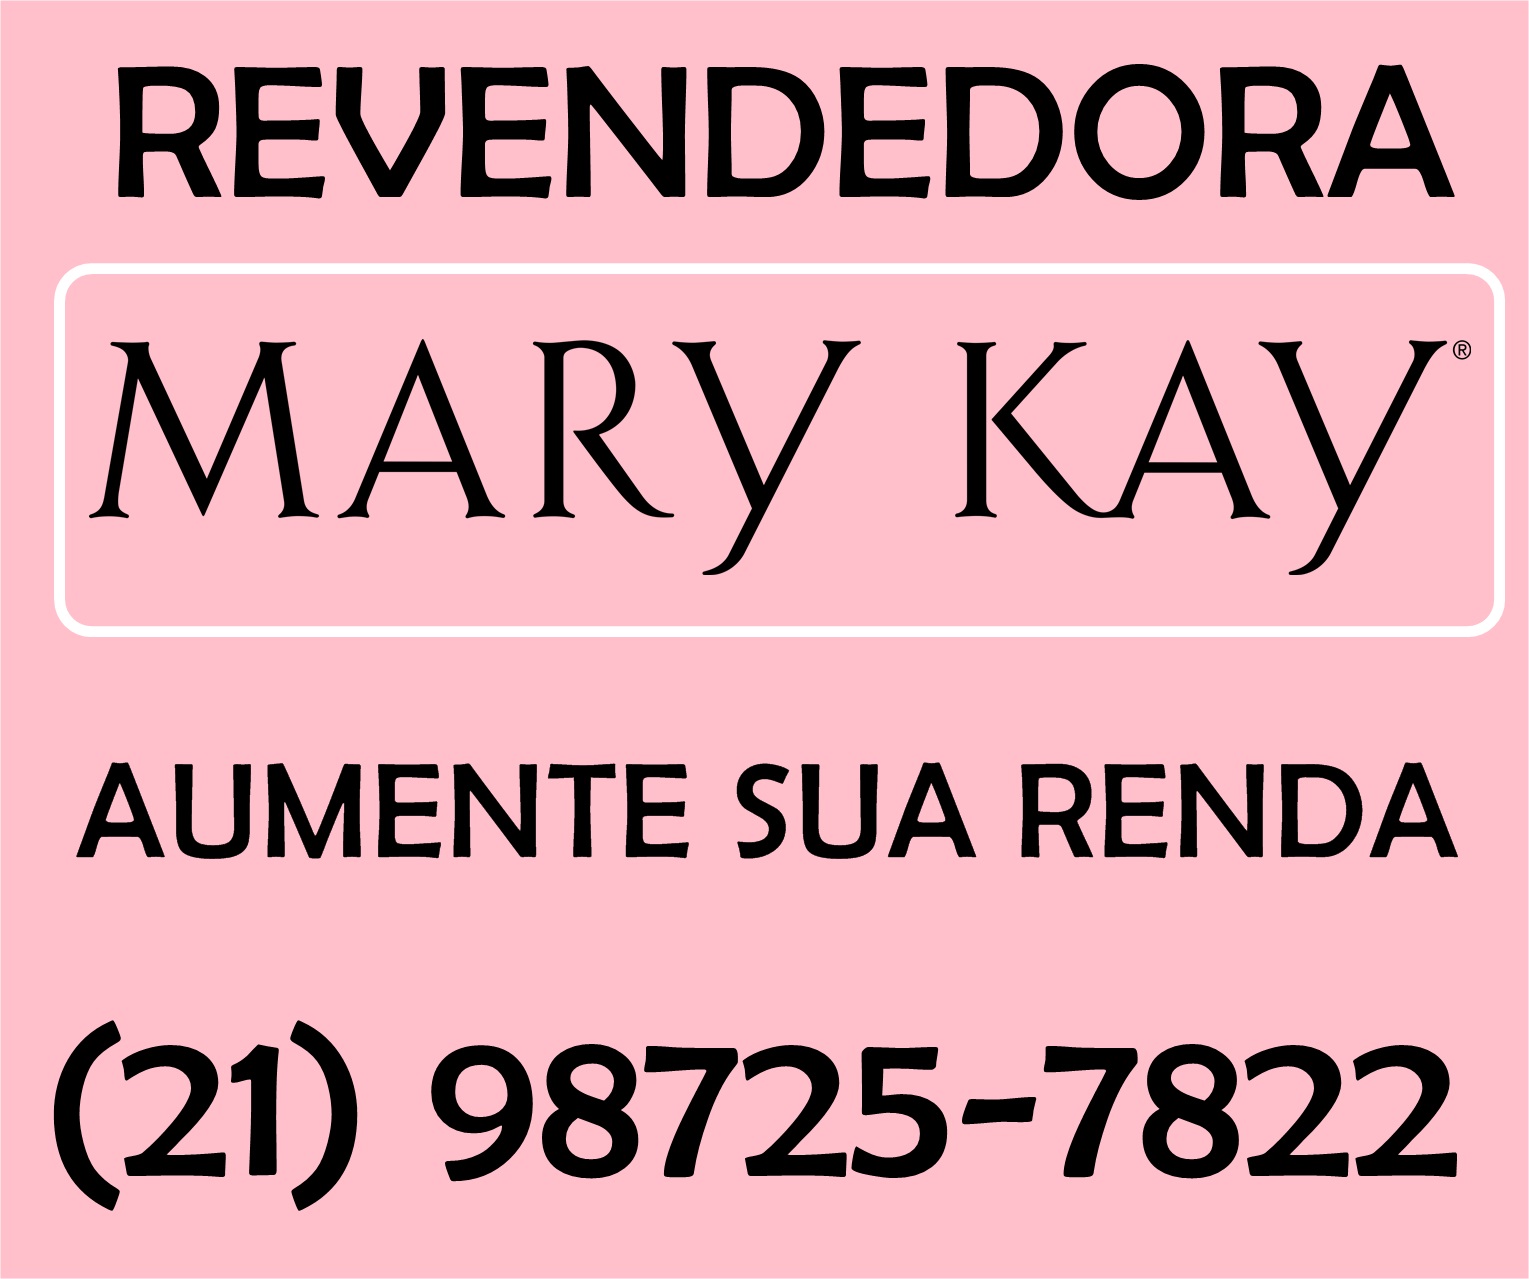 MARY kAY